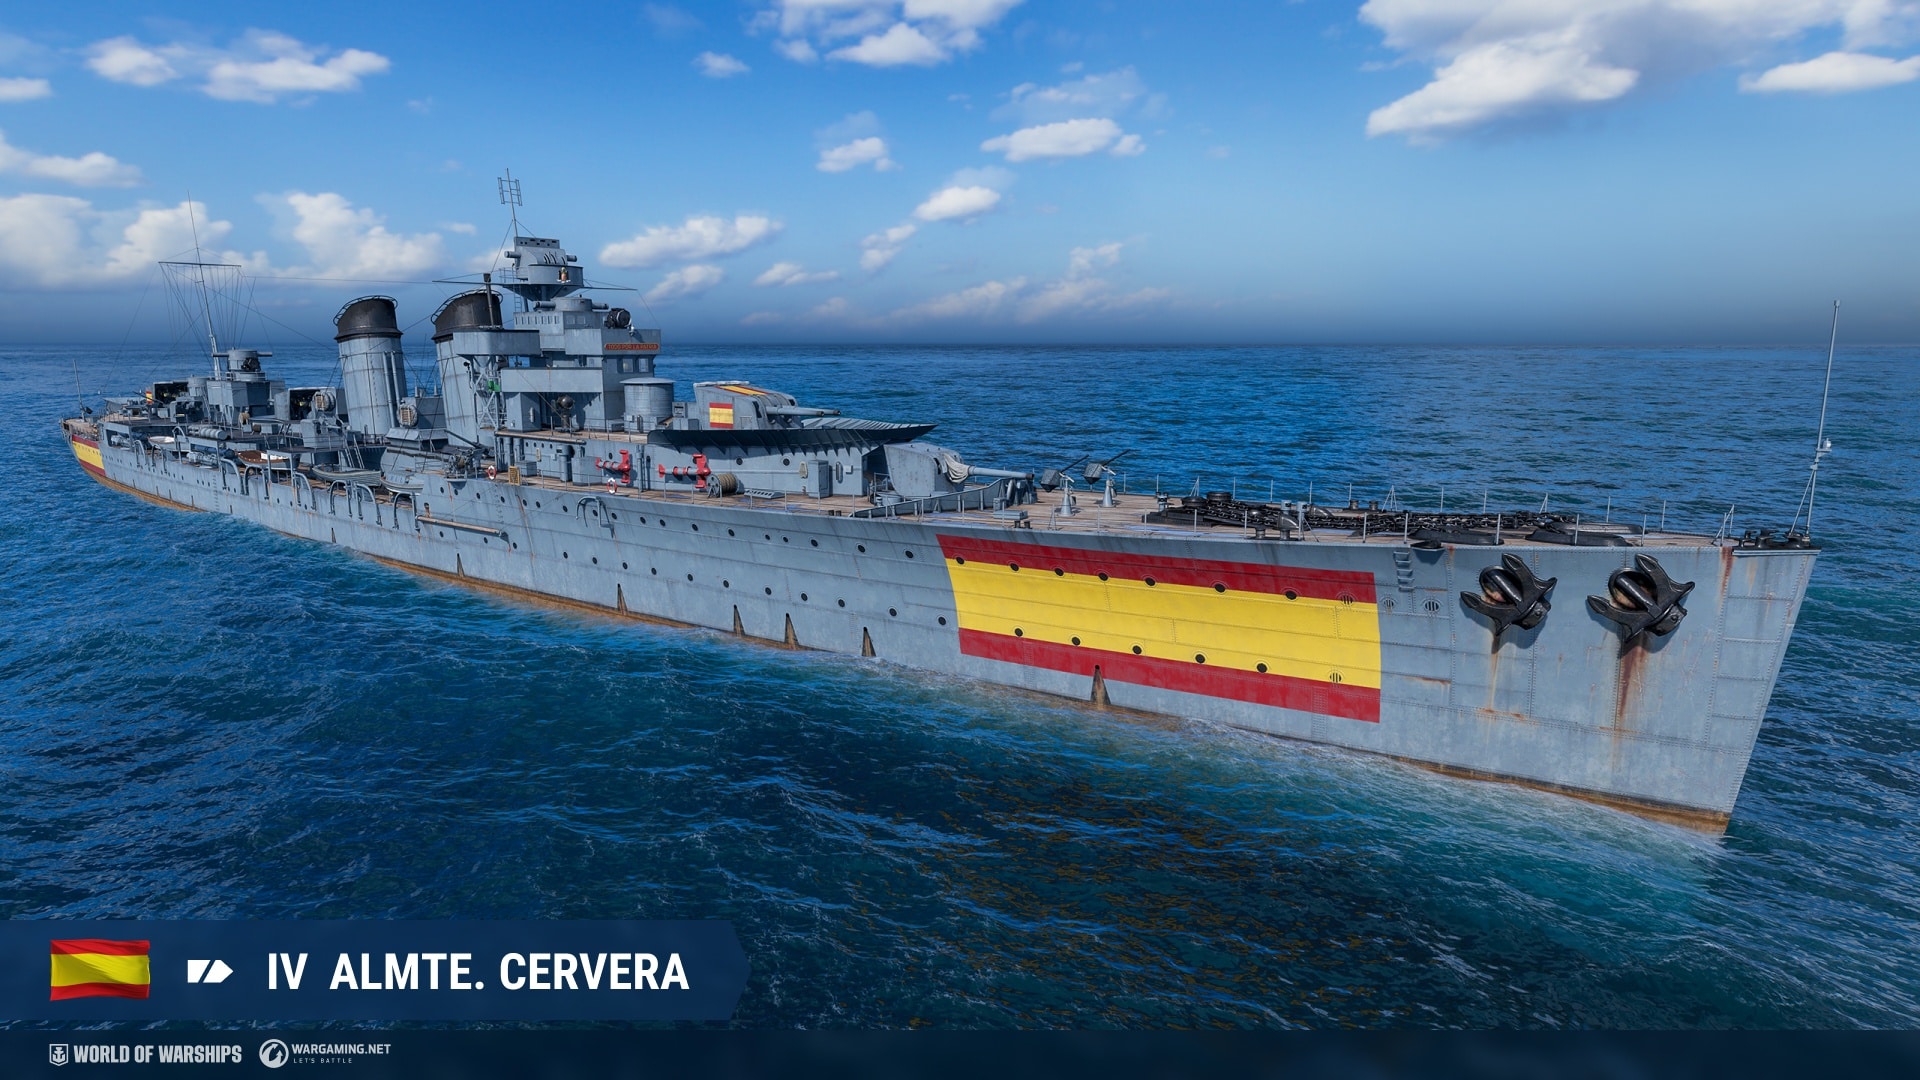 Almirante_Cervera_SP_T4_CA_Screenshots_Release_0126_EN_1920x1080_WG_BG_WOWs